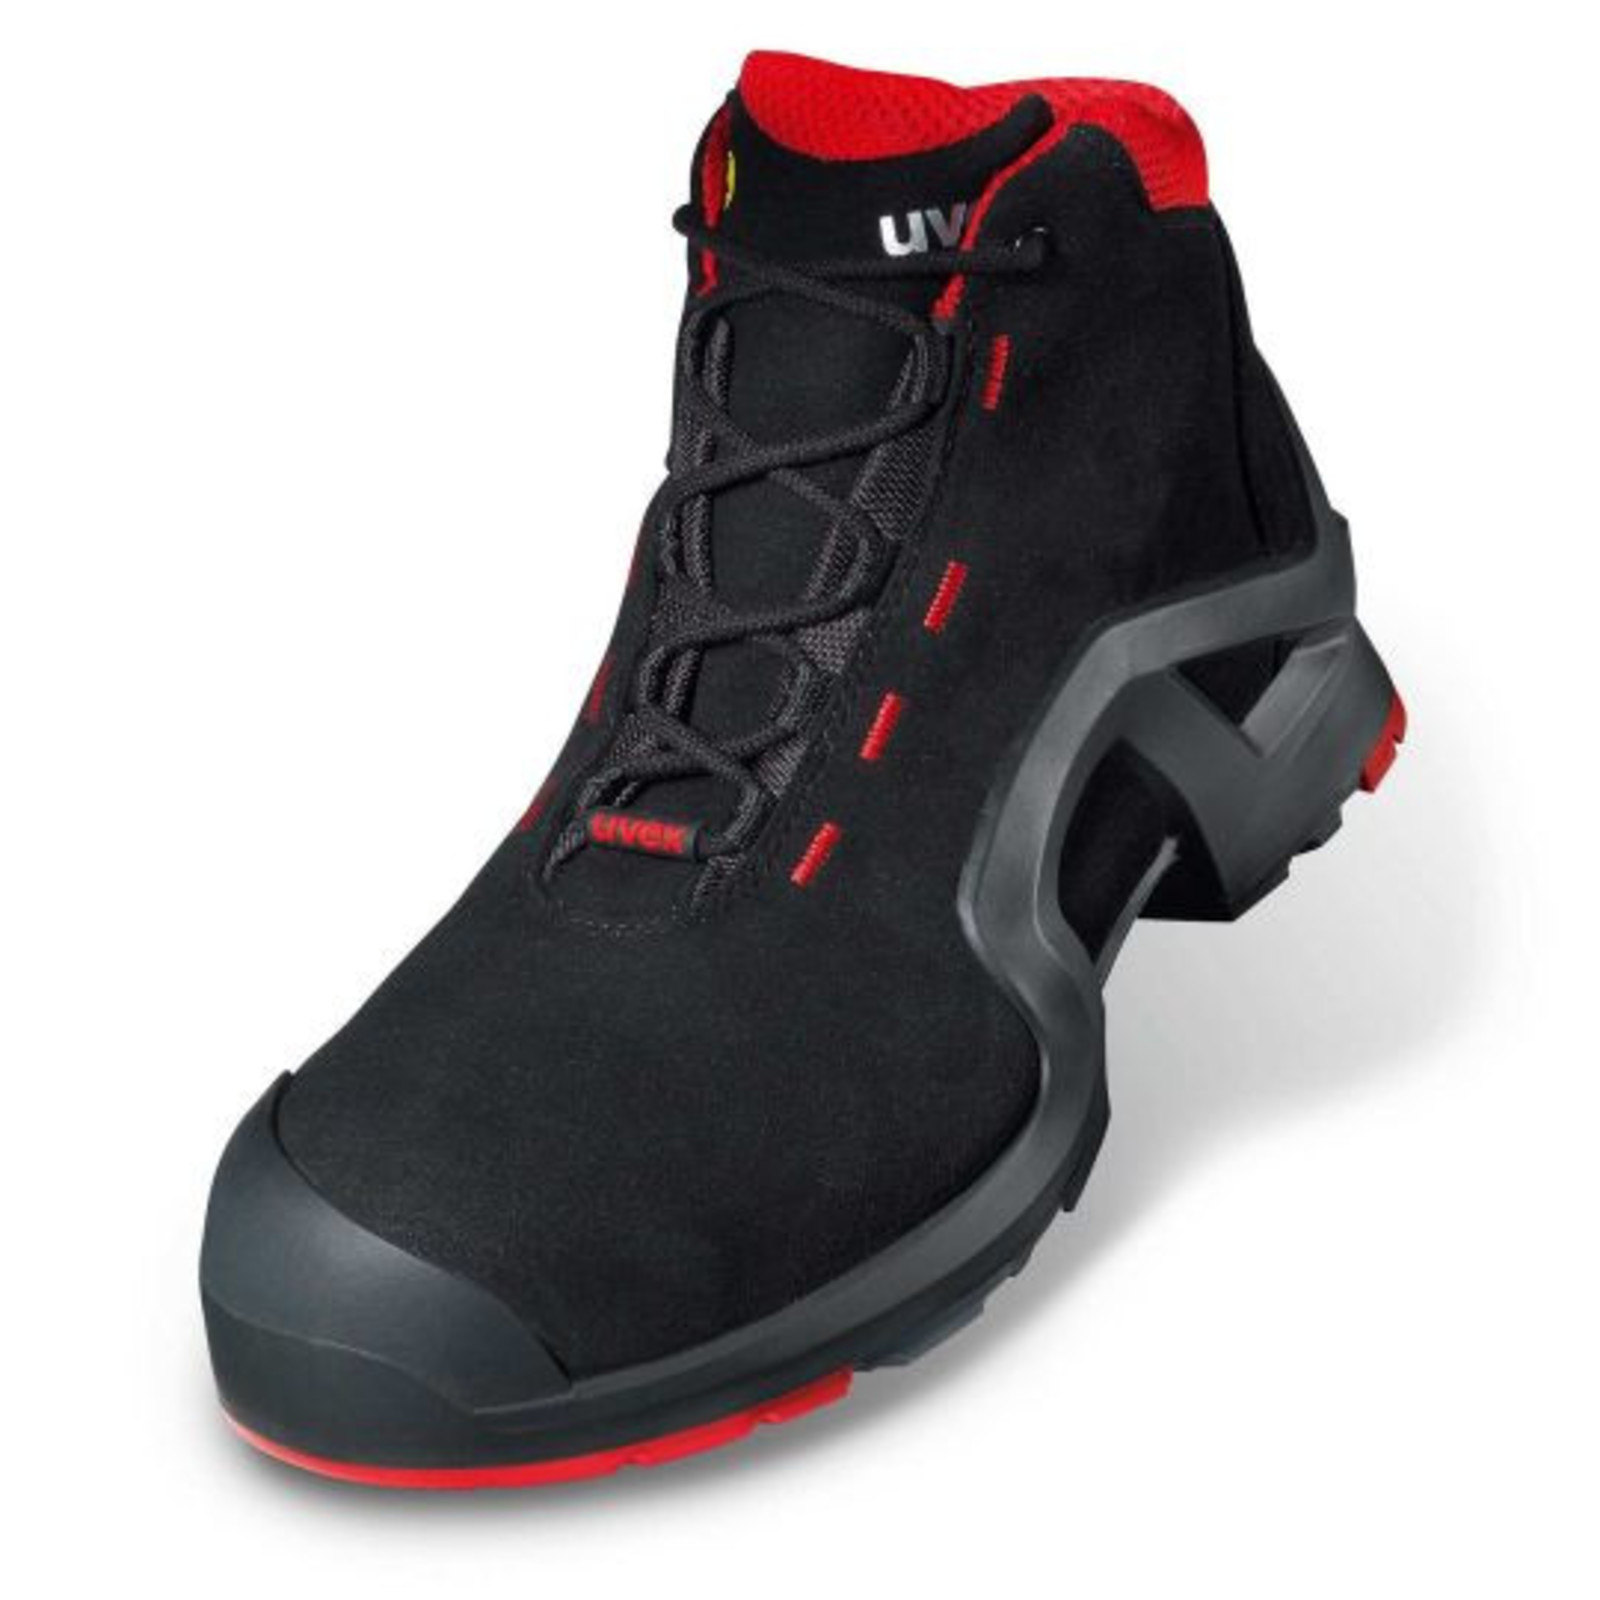 Vysoká bezpečnostná obuv Uvex 1 x-tended support S3 85172 - veľkosť: 48, farba: čierna/červená